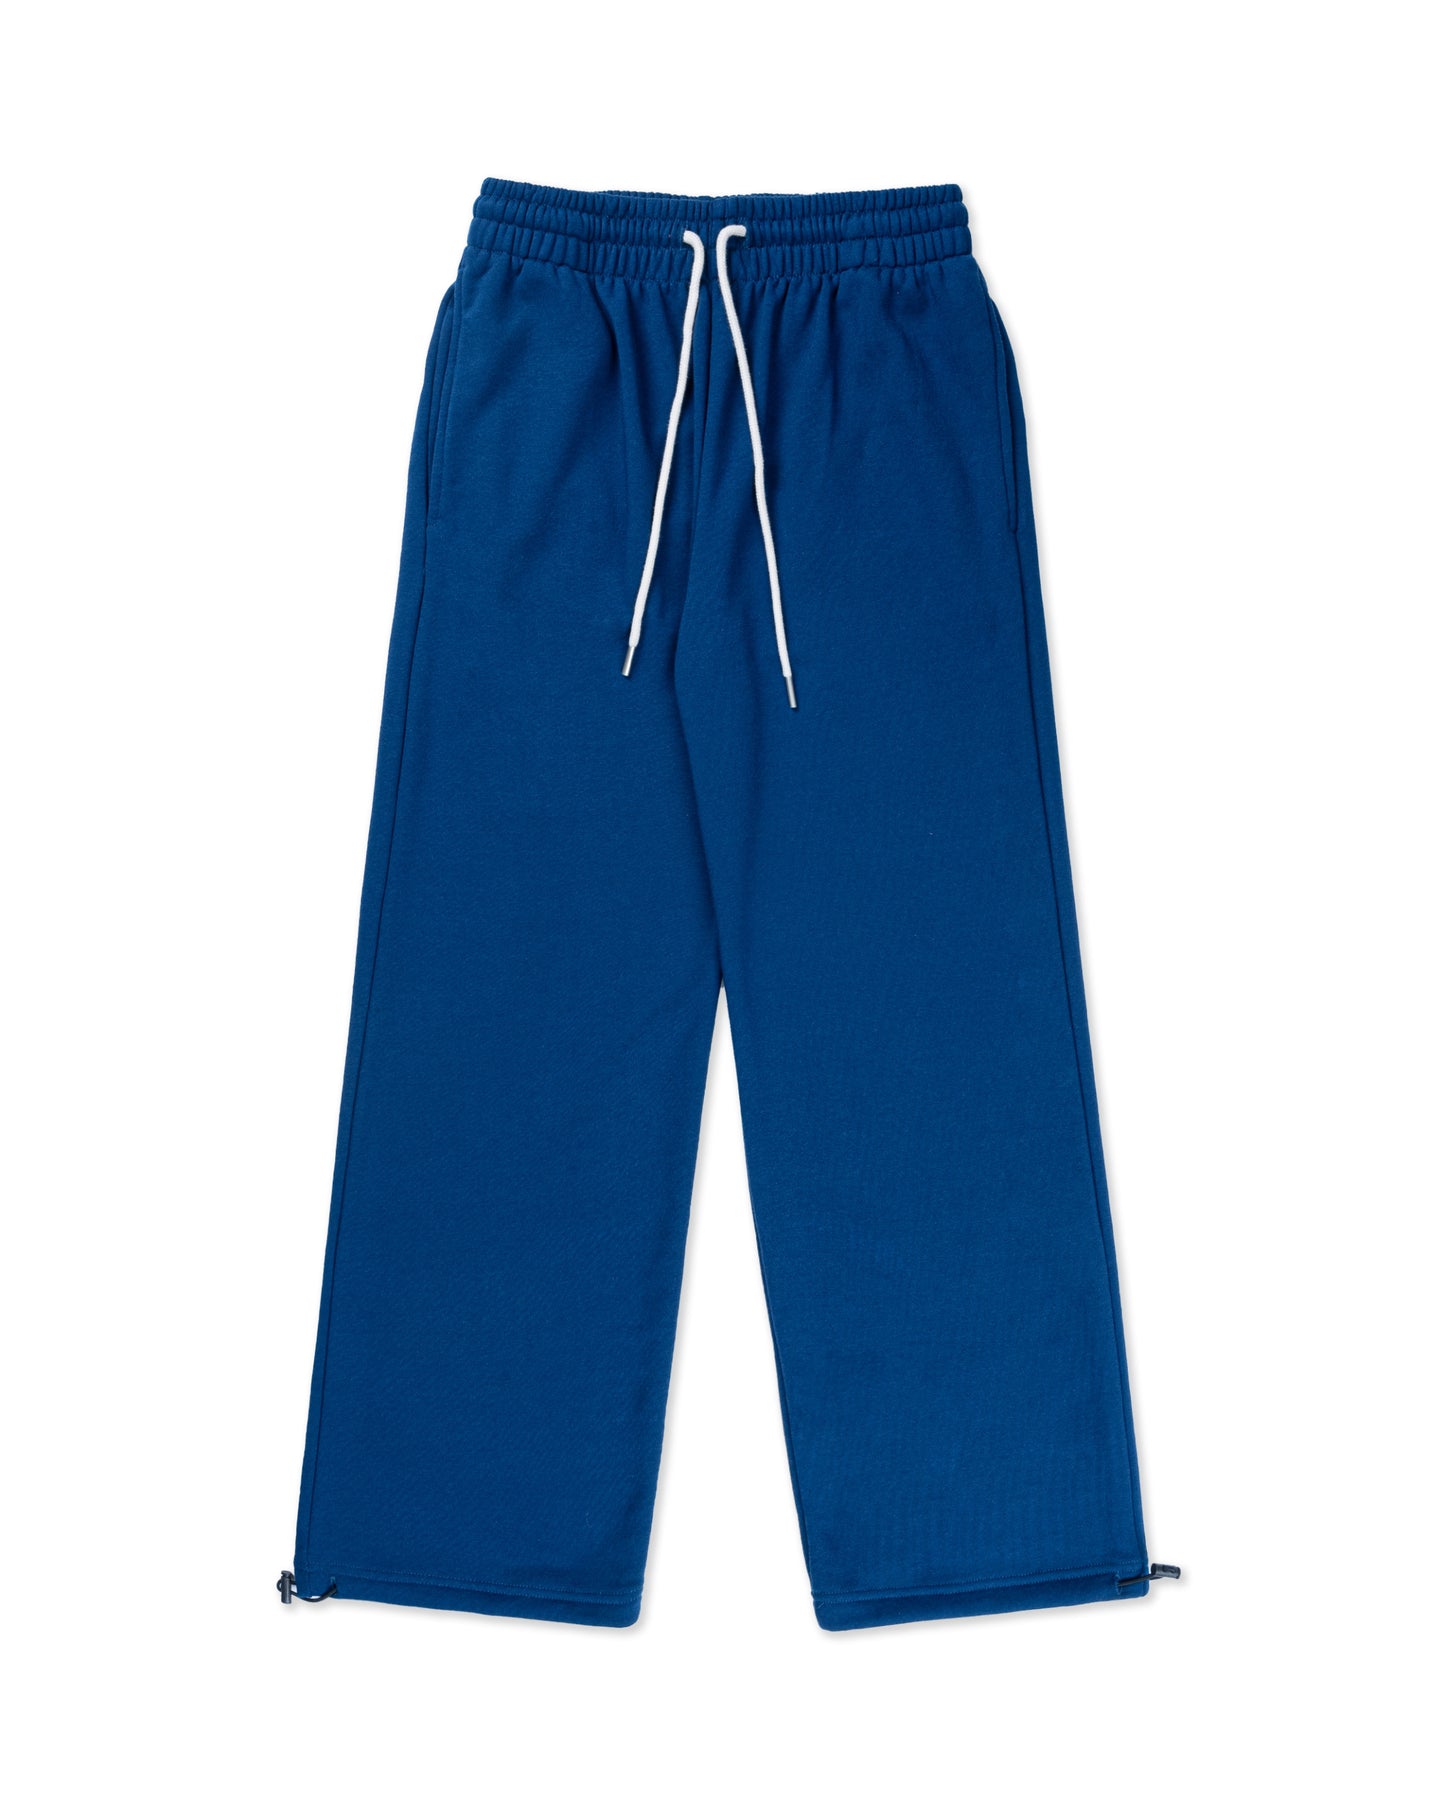 Levents® Classic SweatPants/ Blue